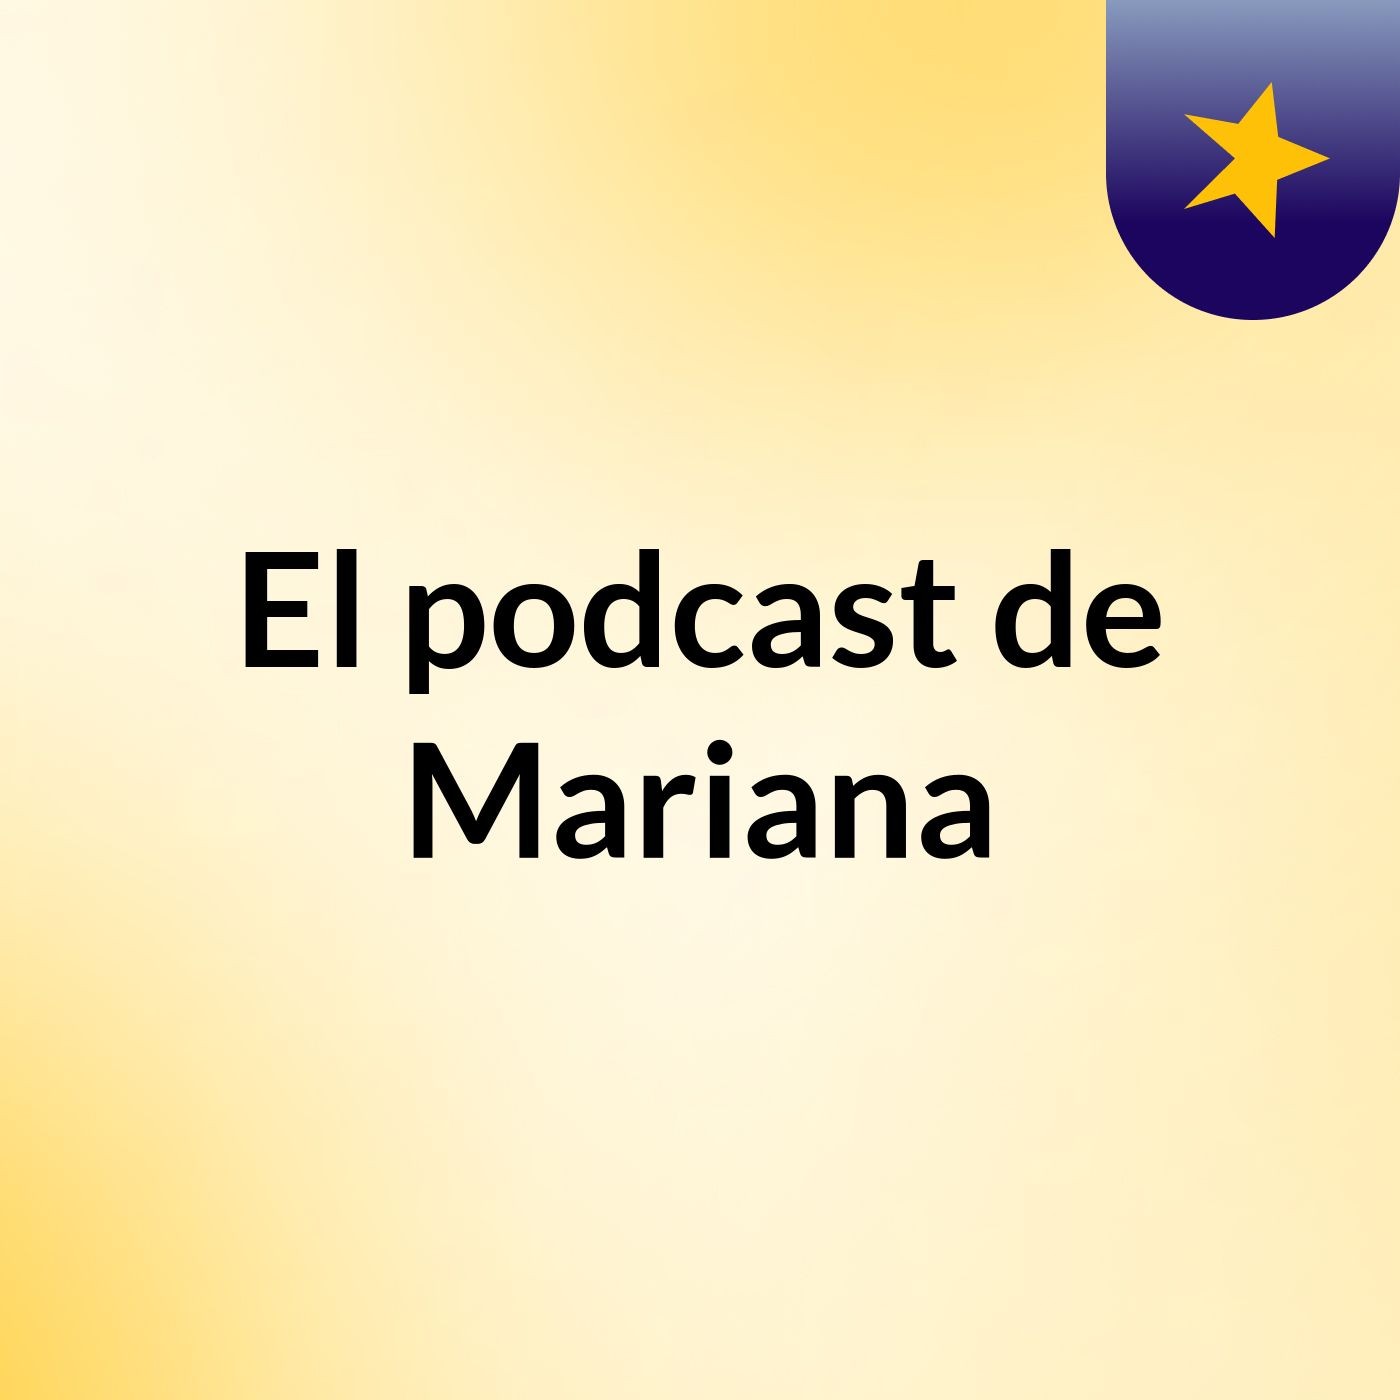 El podcast de Mariana